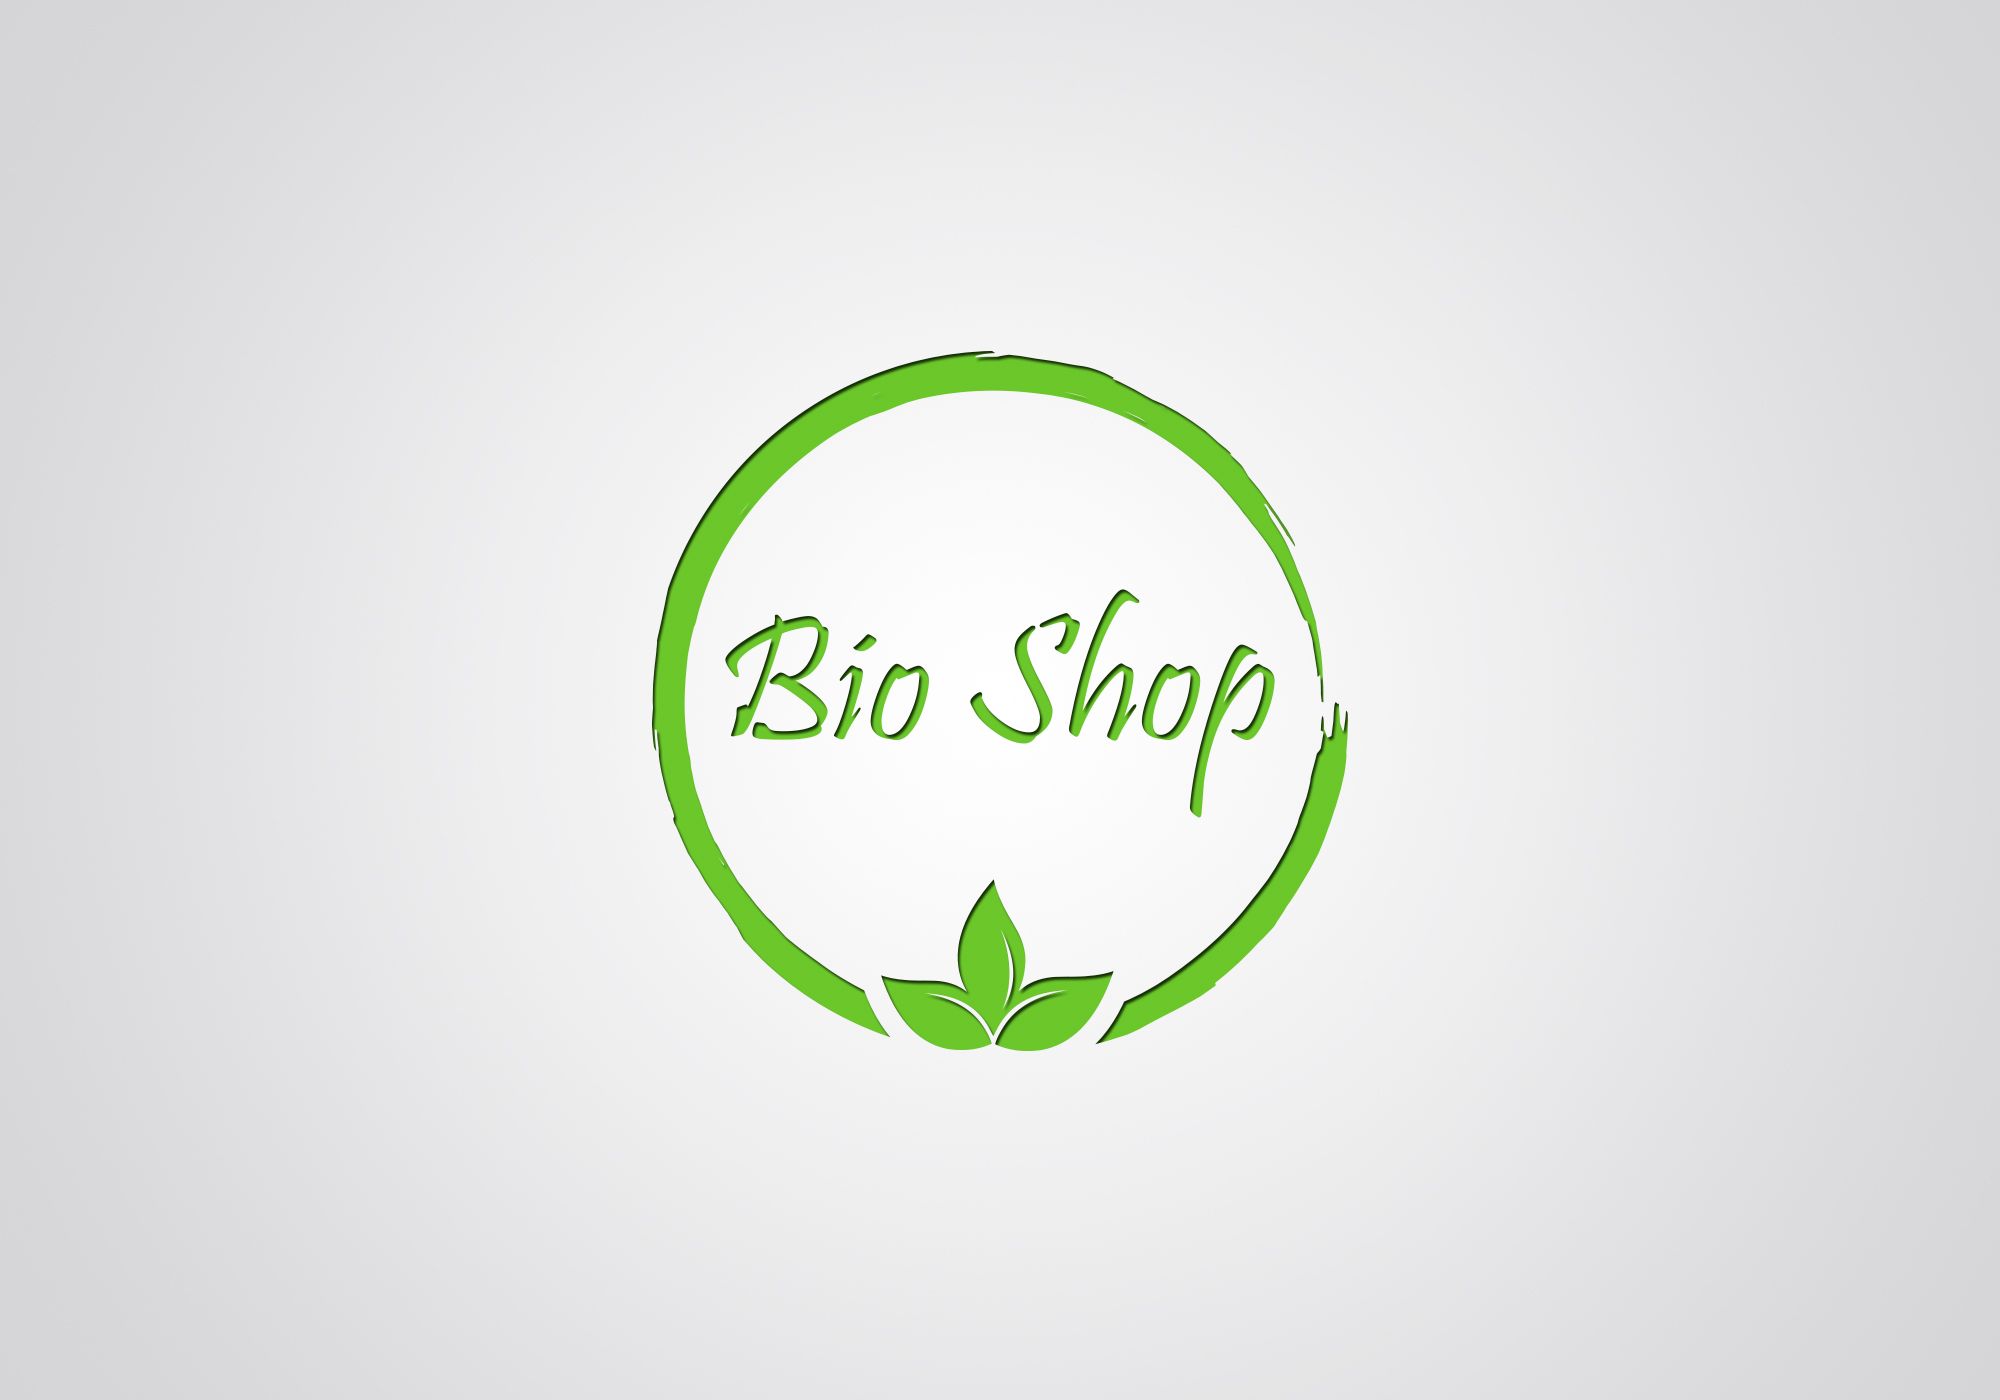 Продажа био продуктов - дизайнер Ninpo